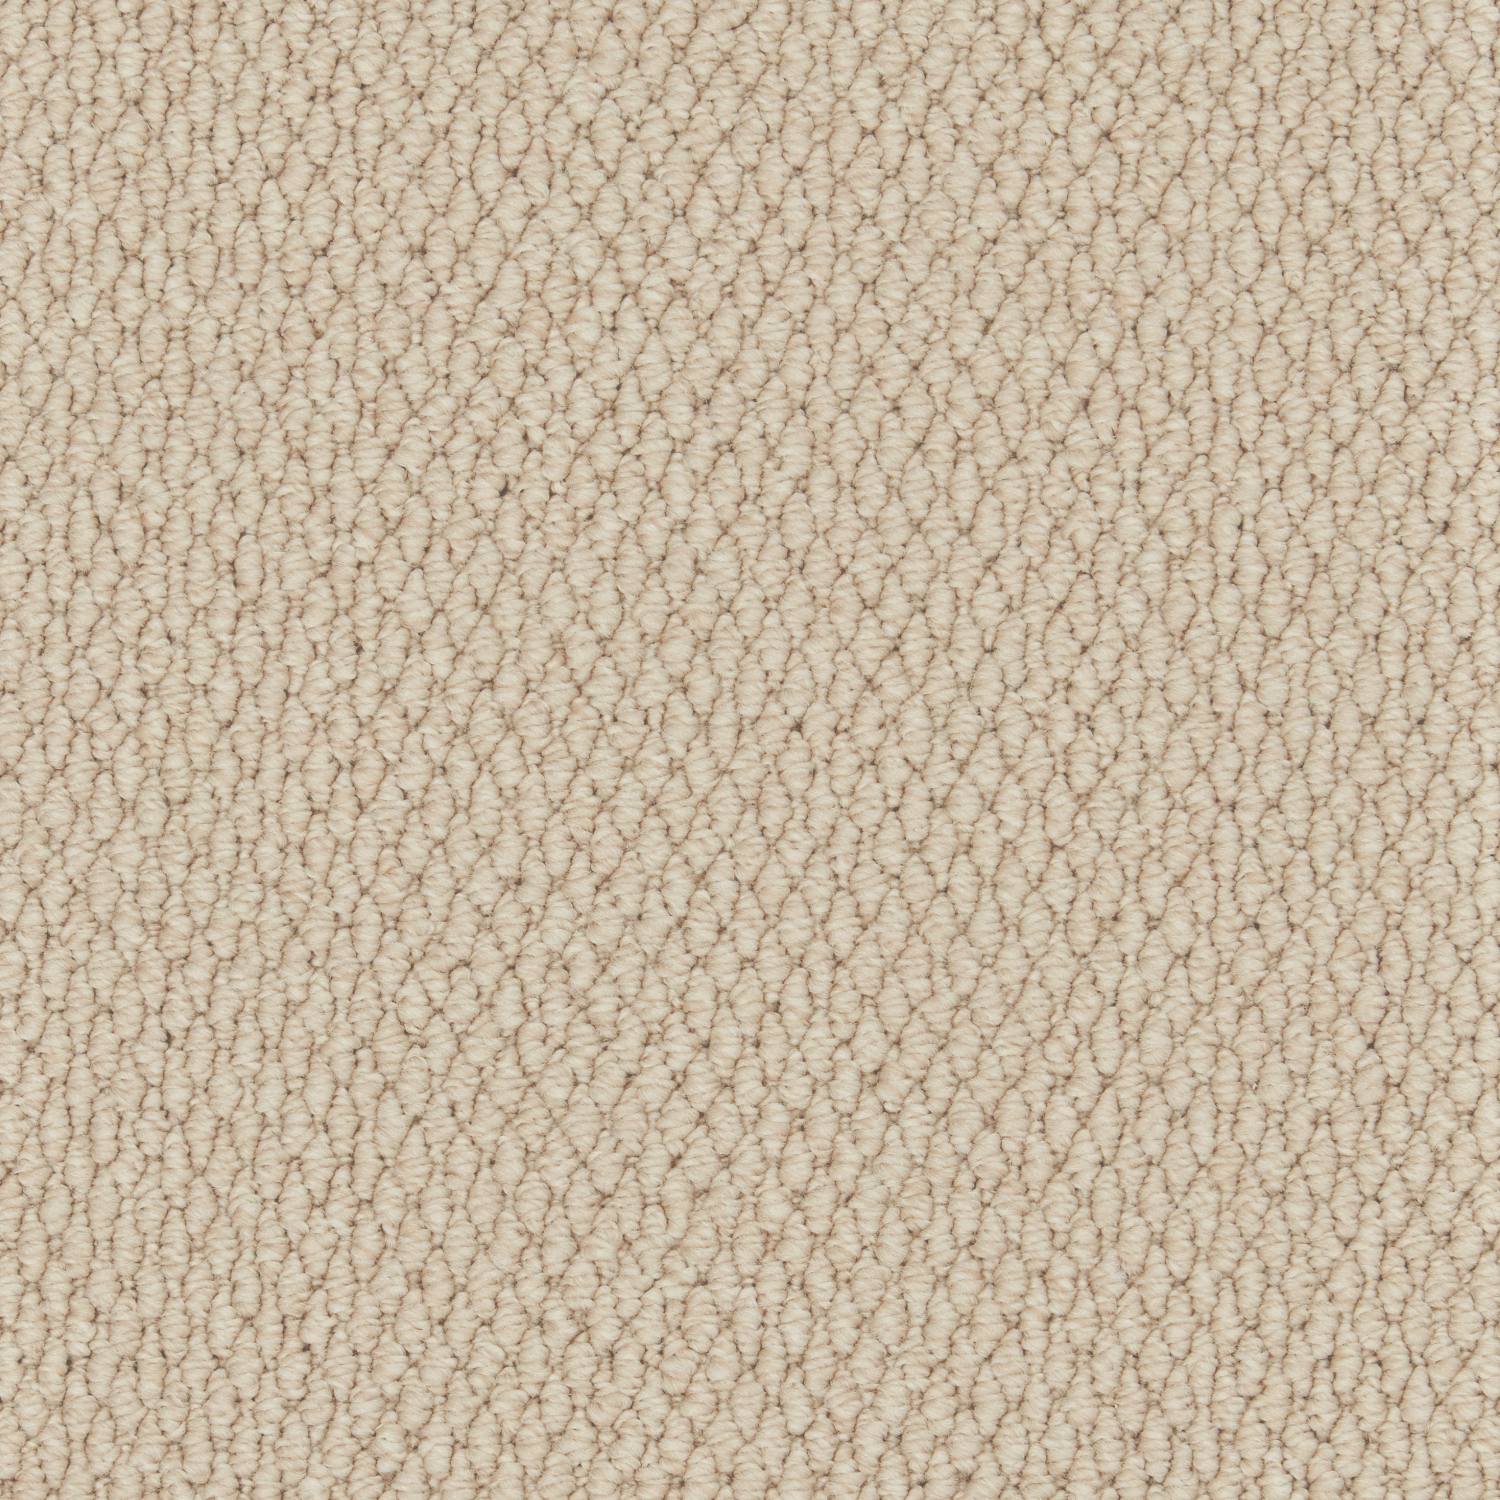 Rural Textures Loop Carpet - Ryeland Weave